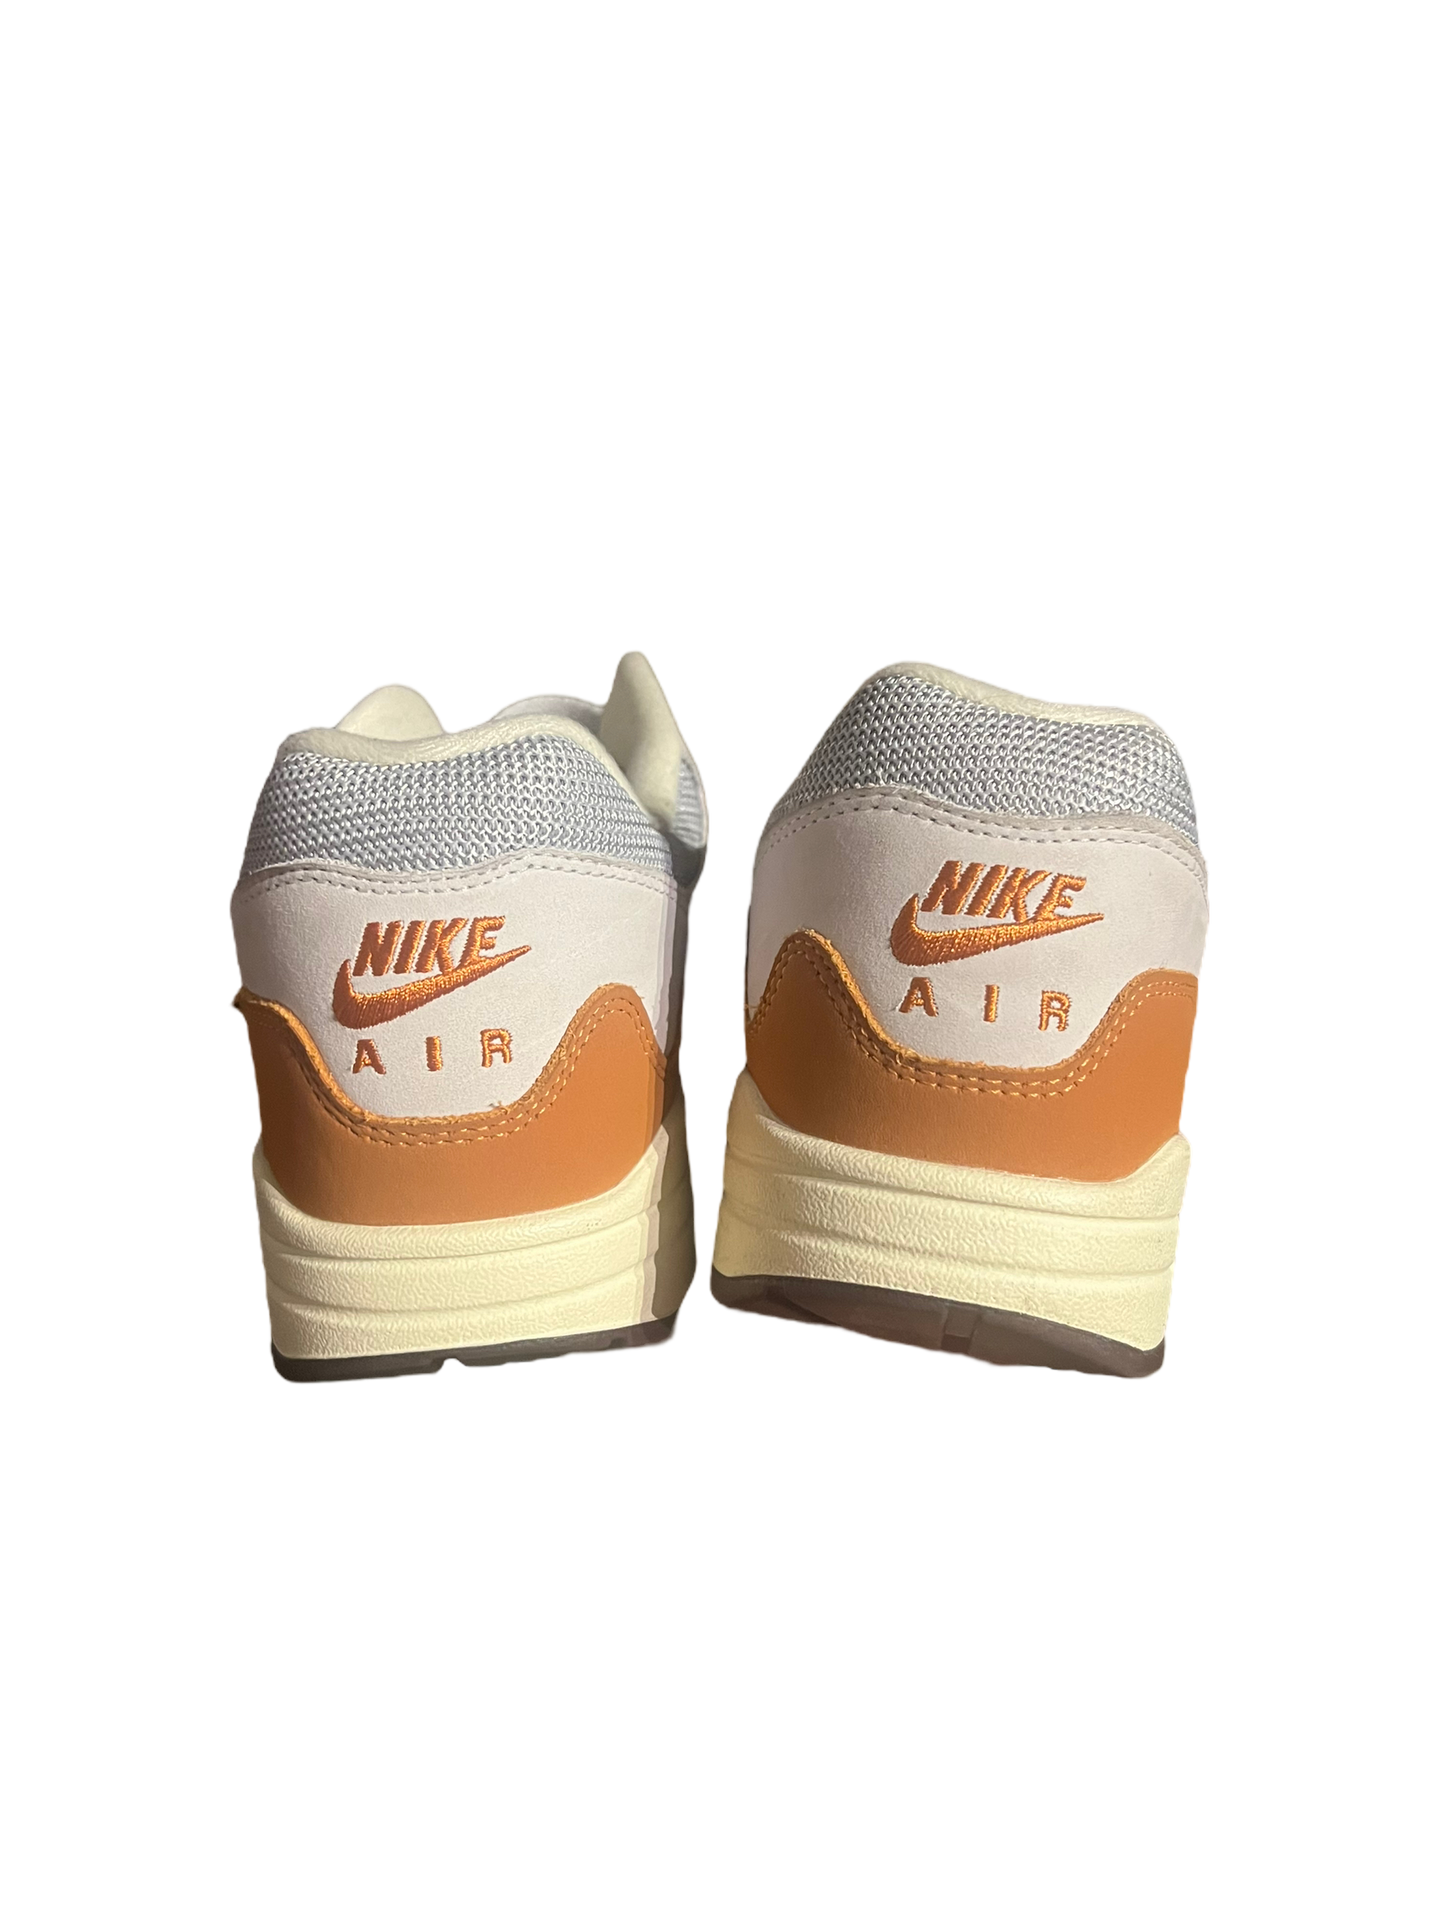 Nike Air max Patta